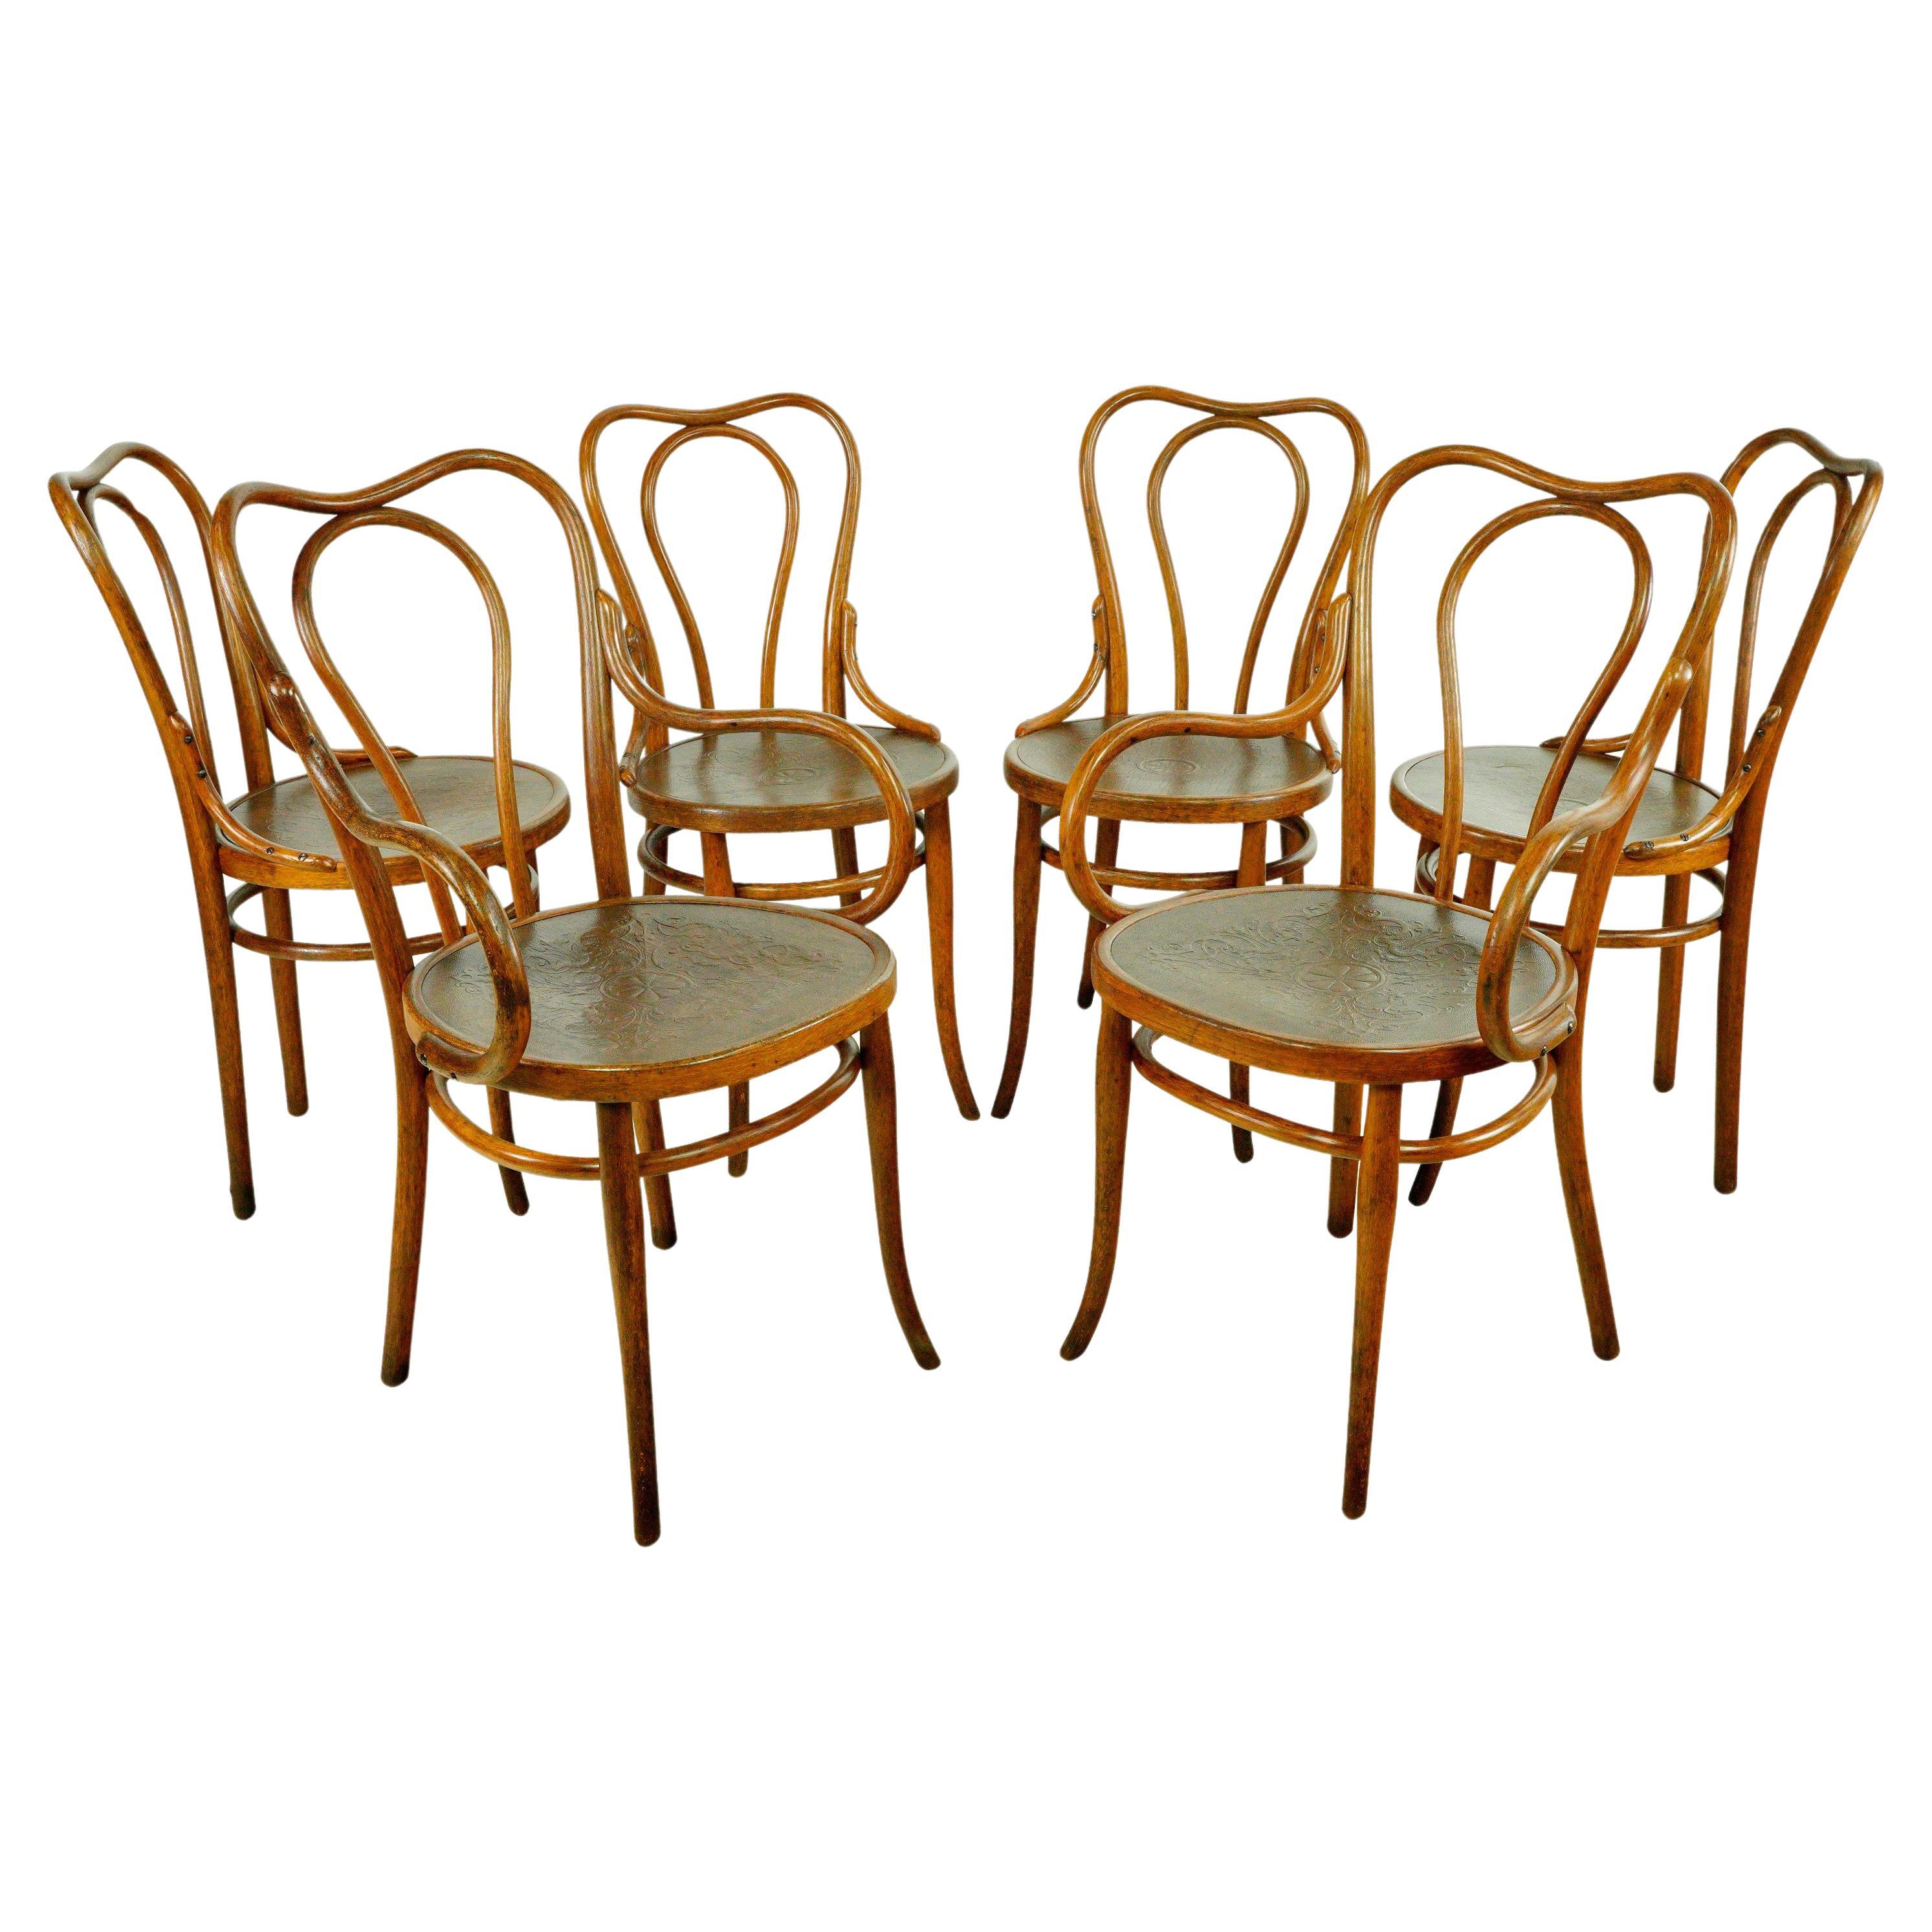 Lot de 6 chaises de bistrot anciennes en bois courbé Thonet avec motif